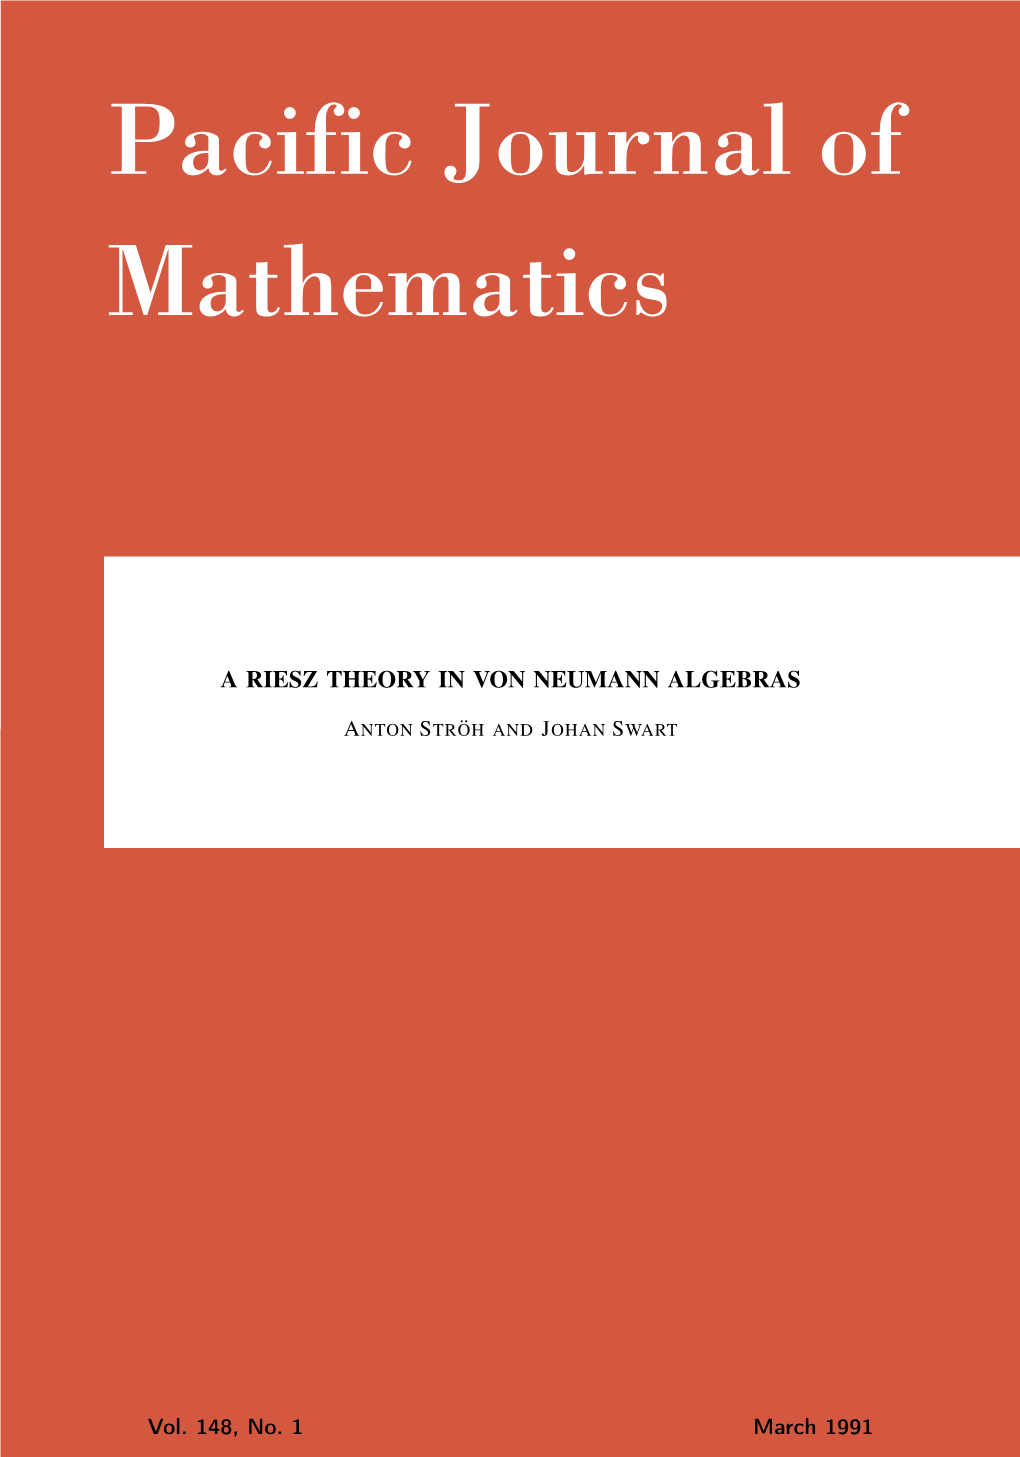 A Riesz Theory in Von Neumann Algebras